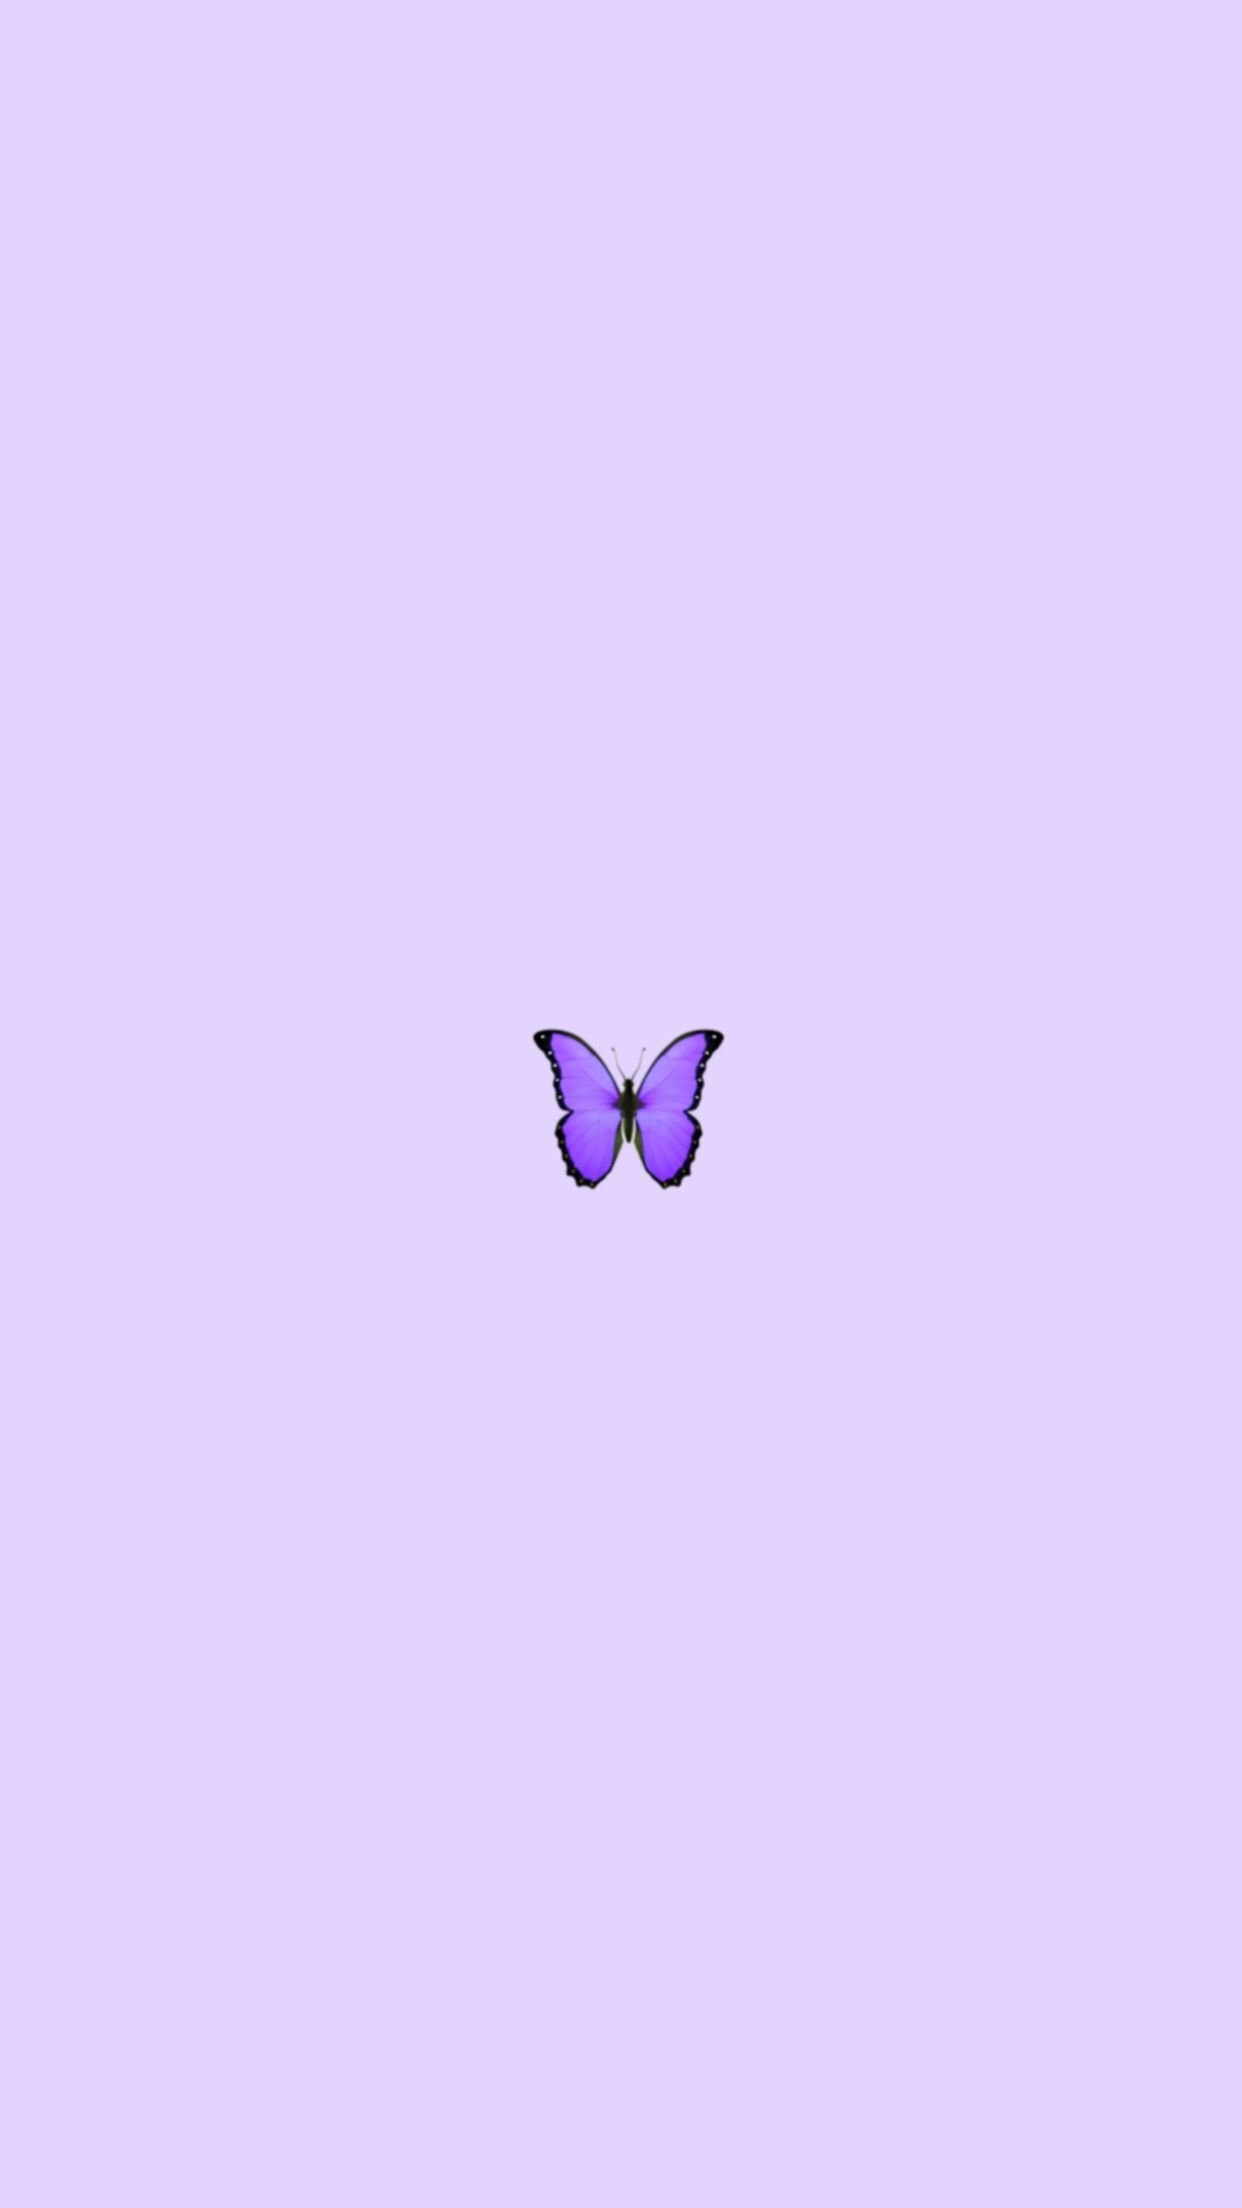 46 Purple Butterfly Desktop Wallpaper  WallpaperSafari